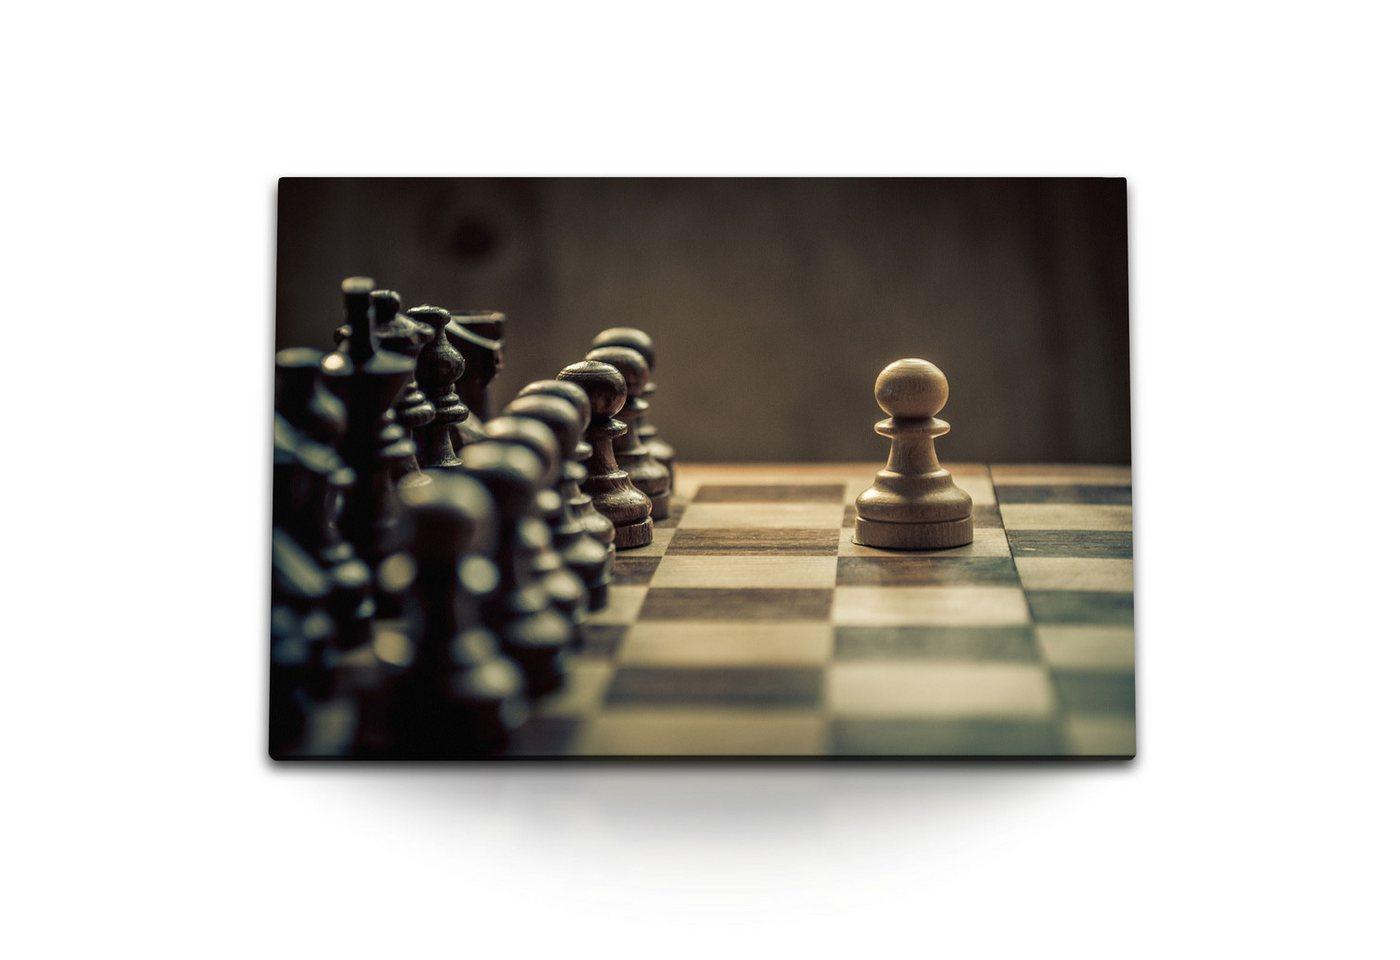 Sinus Art Leinwandbild 120x80cm Wandbild auf Leinwand Schach Schachspiel Schachbrett Schachfi